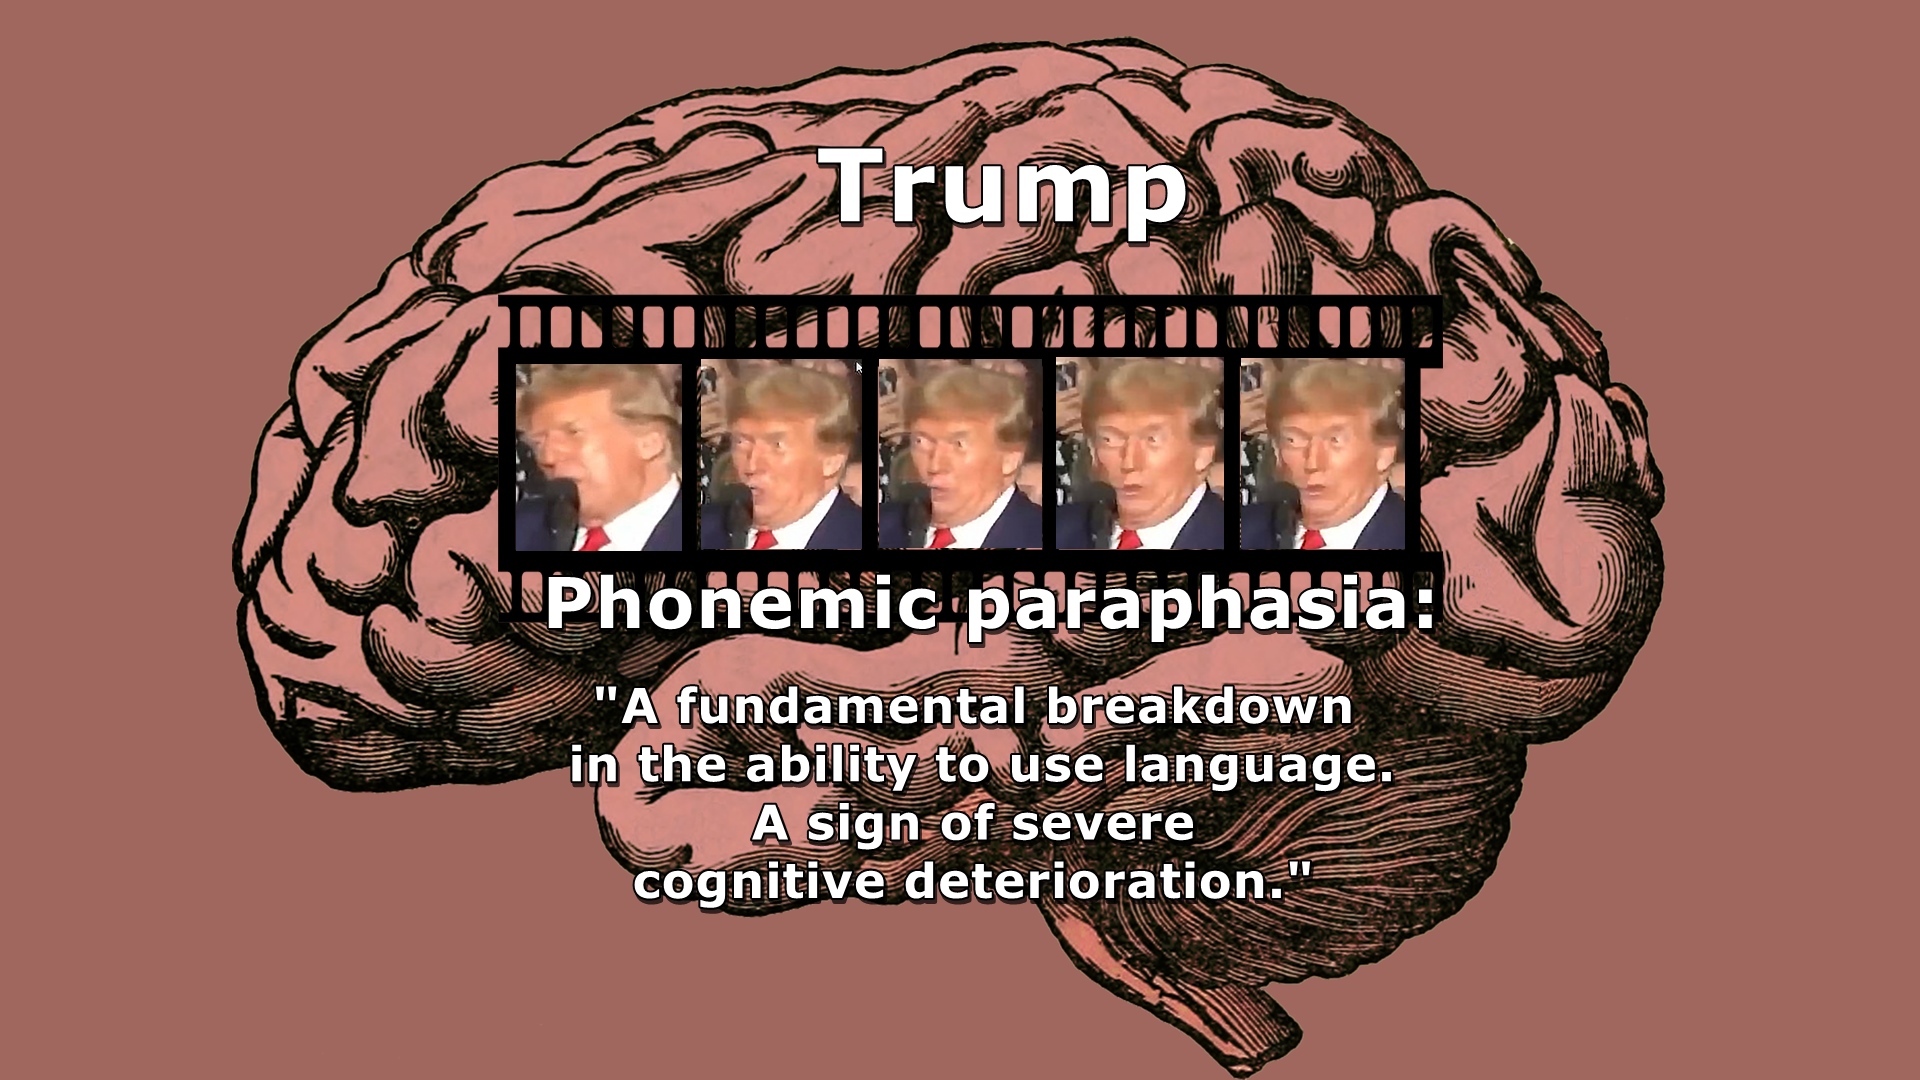 Trump, phonemic paraphasia, language breakdown, cognitive deterioration